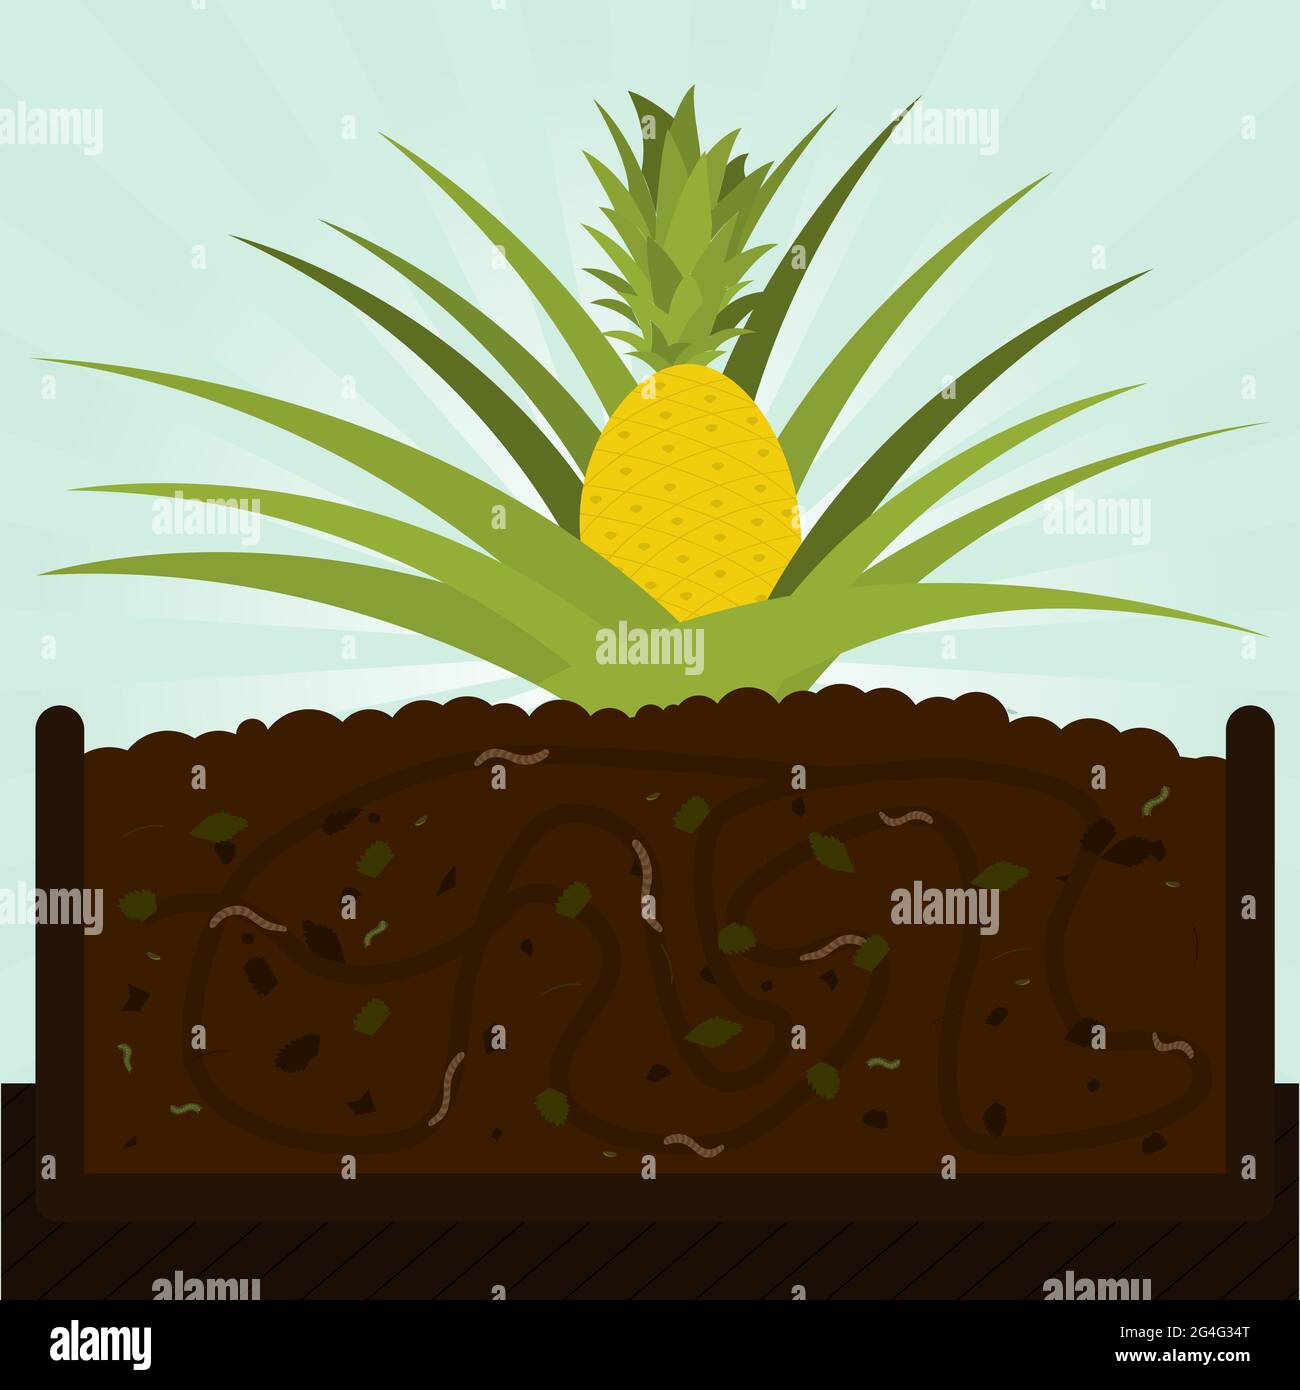 Ananas. Processus de compostage avec matière organique, micro-organismes et vers de terre. Feuilles tombées sur le sol. Illustration de Vecteur